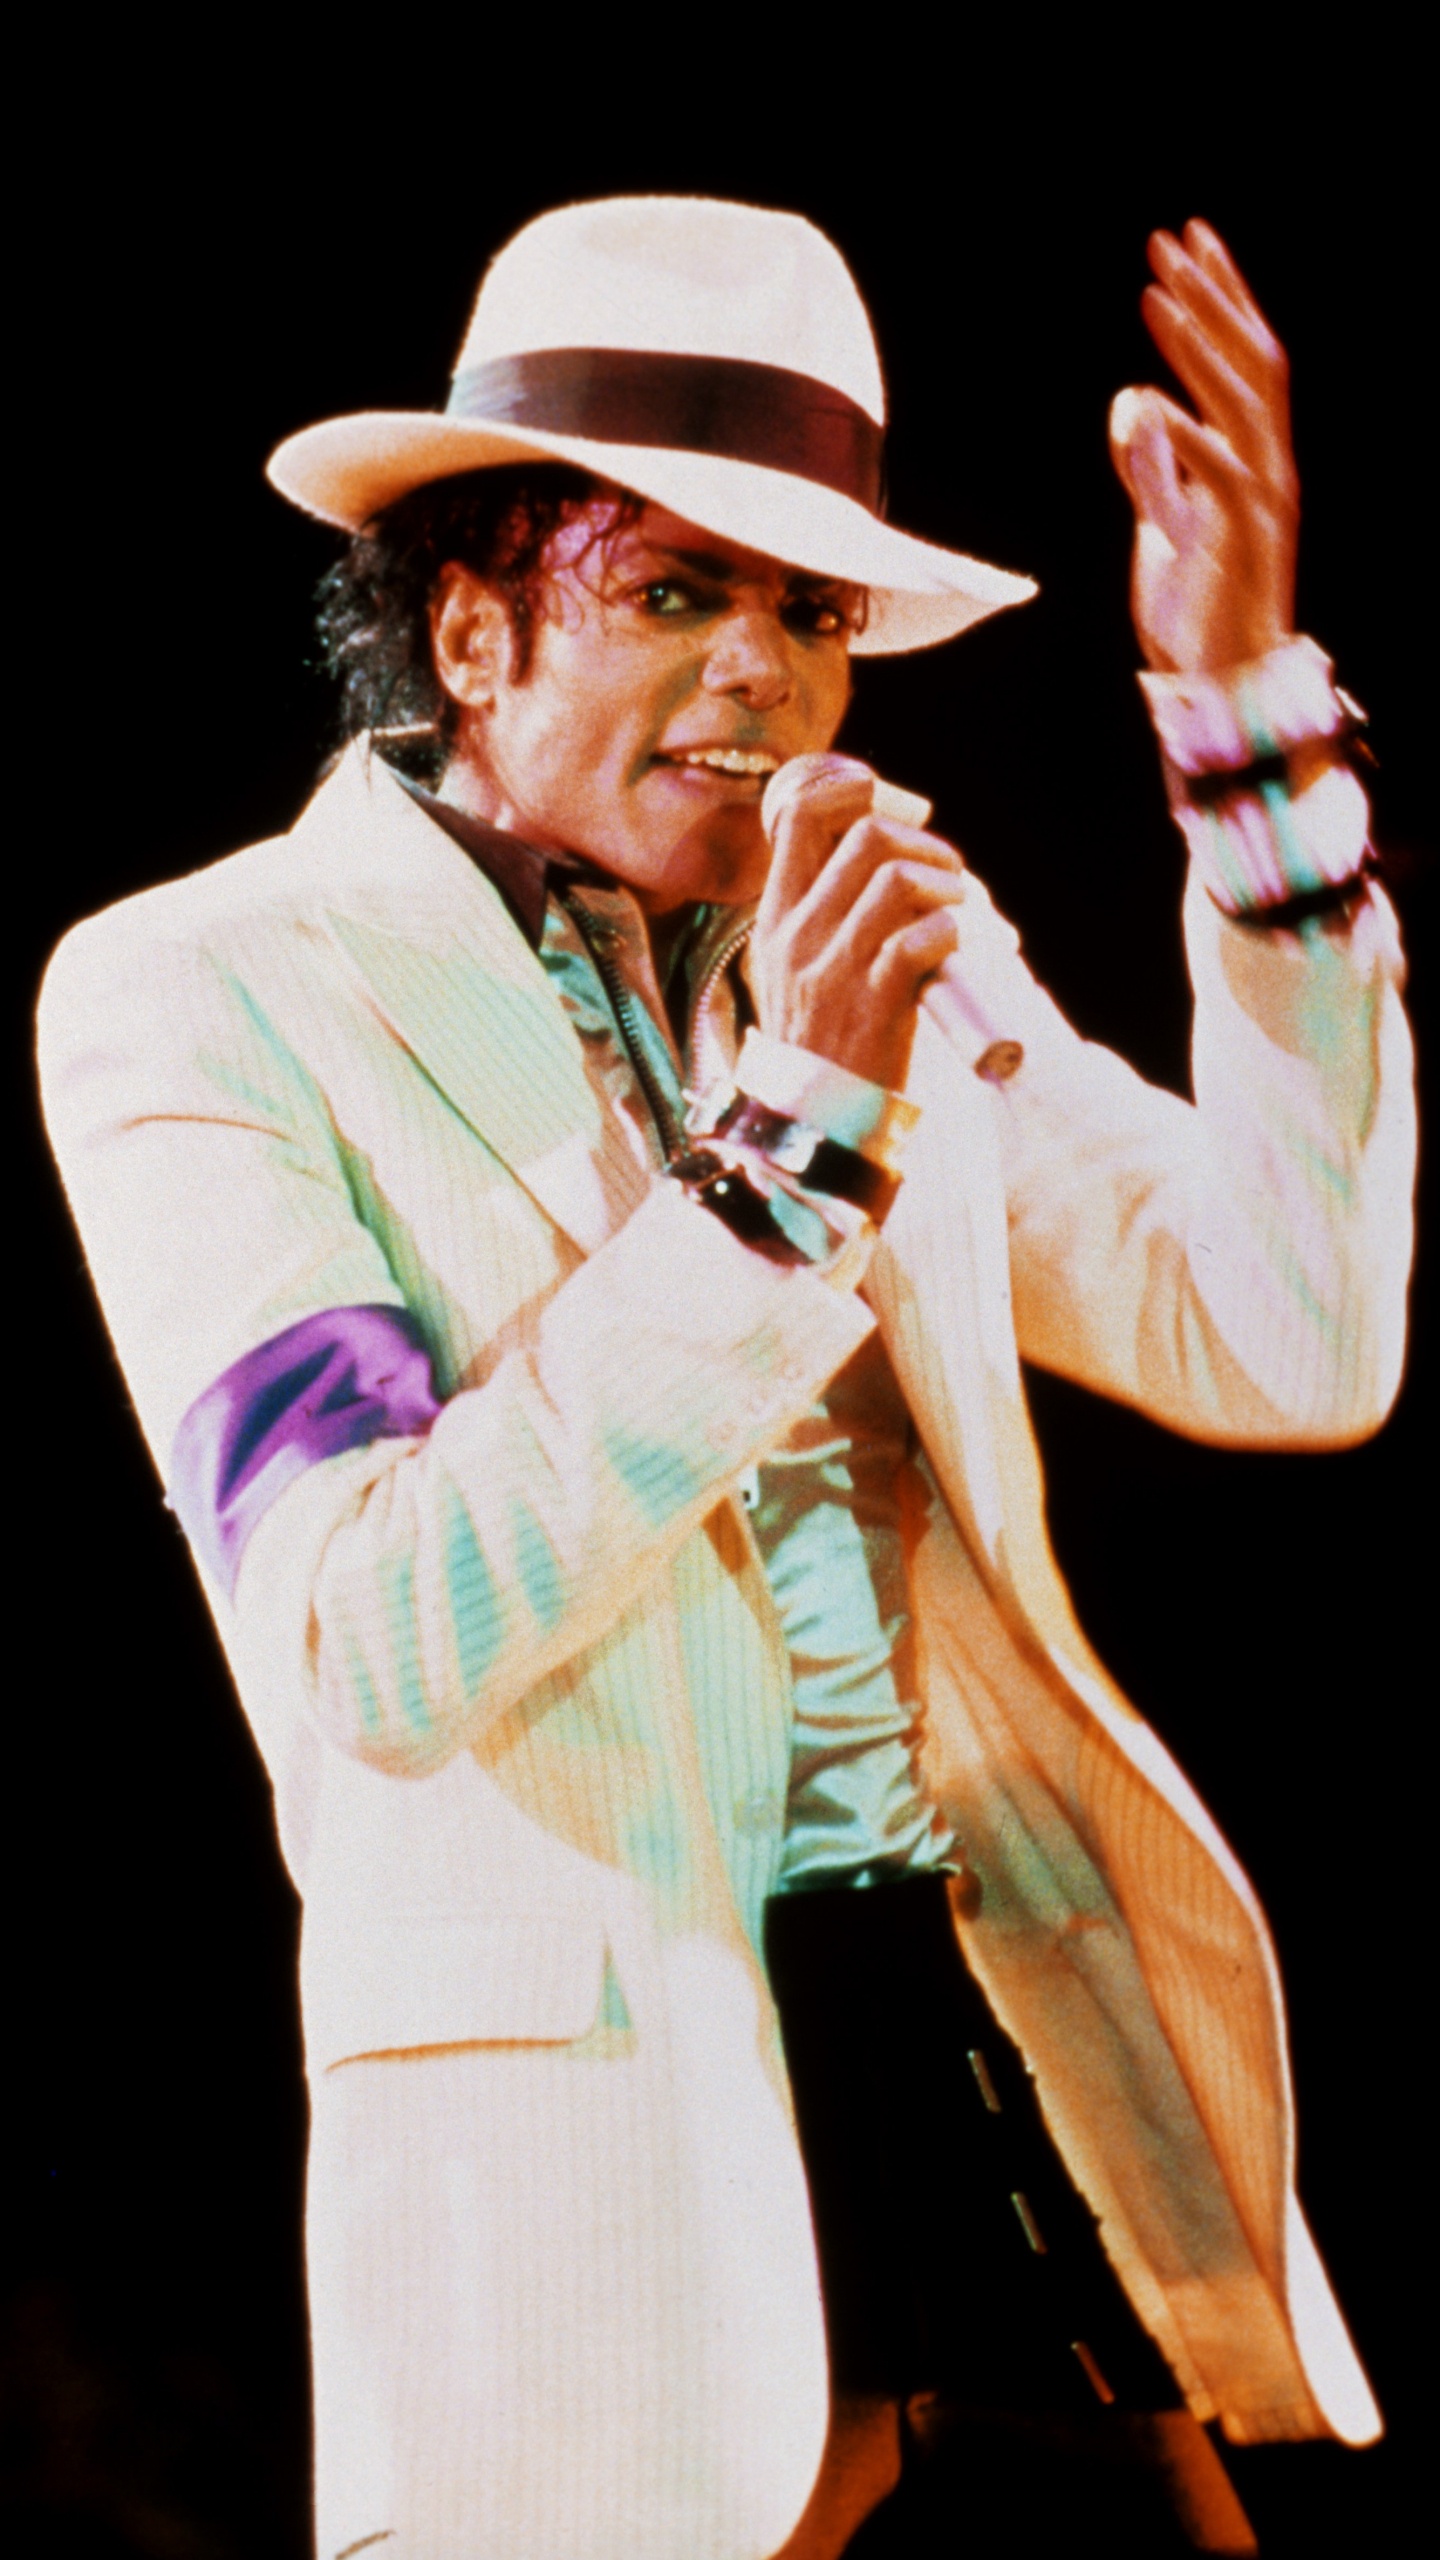 迈克尔*杰克逊, 糟糕, 性能, 音乐艺术家, 歌手 壁纸 1440x2560 允许